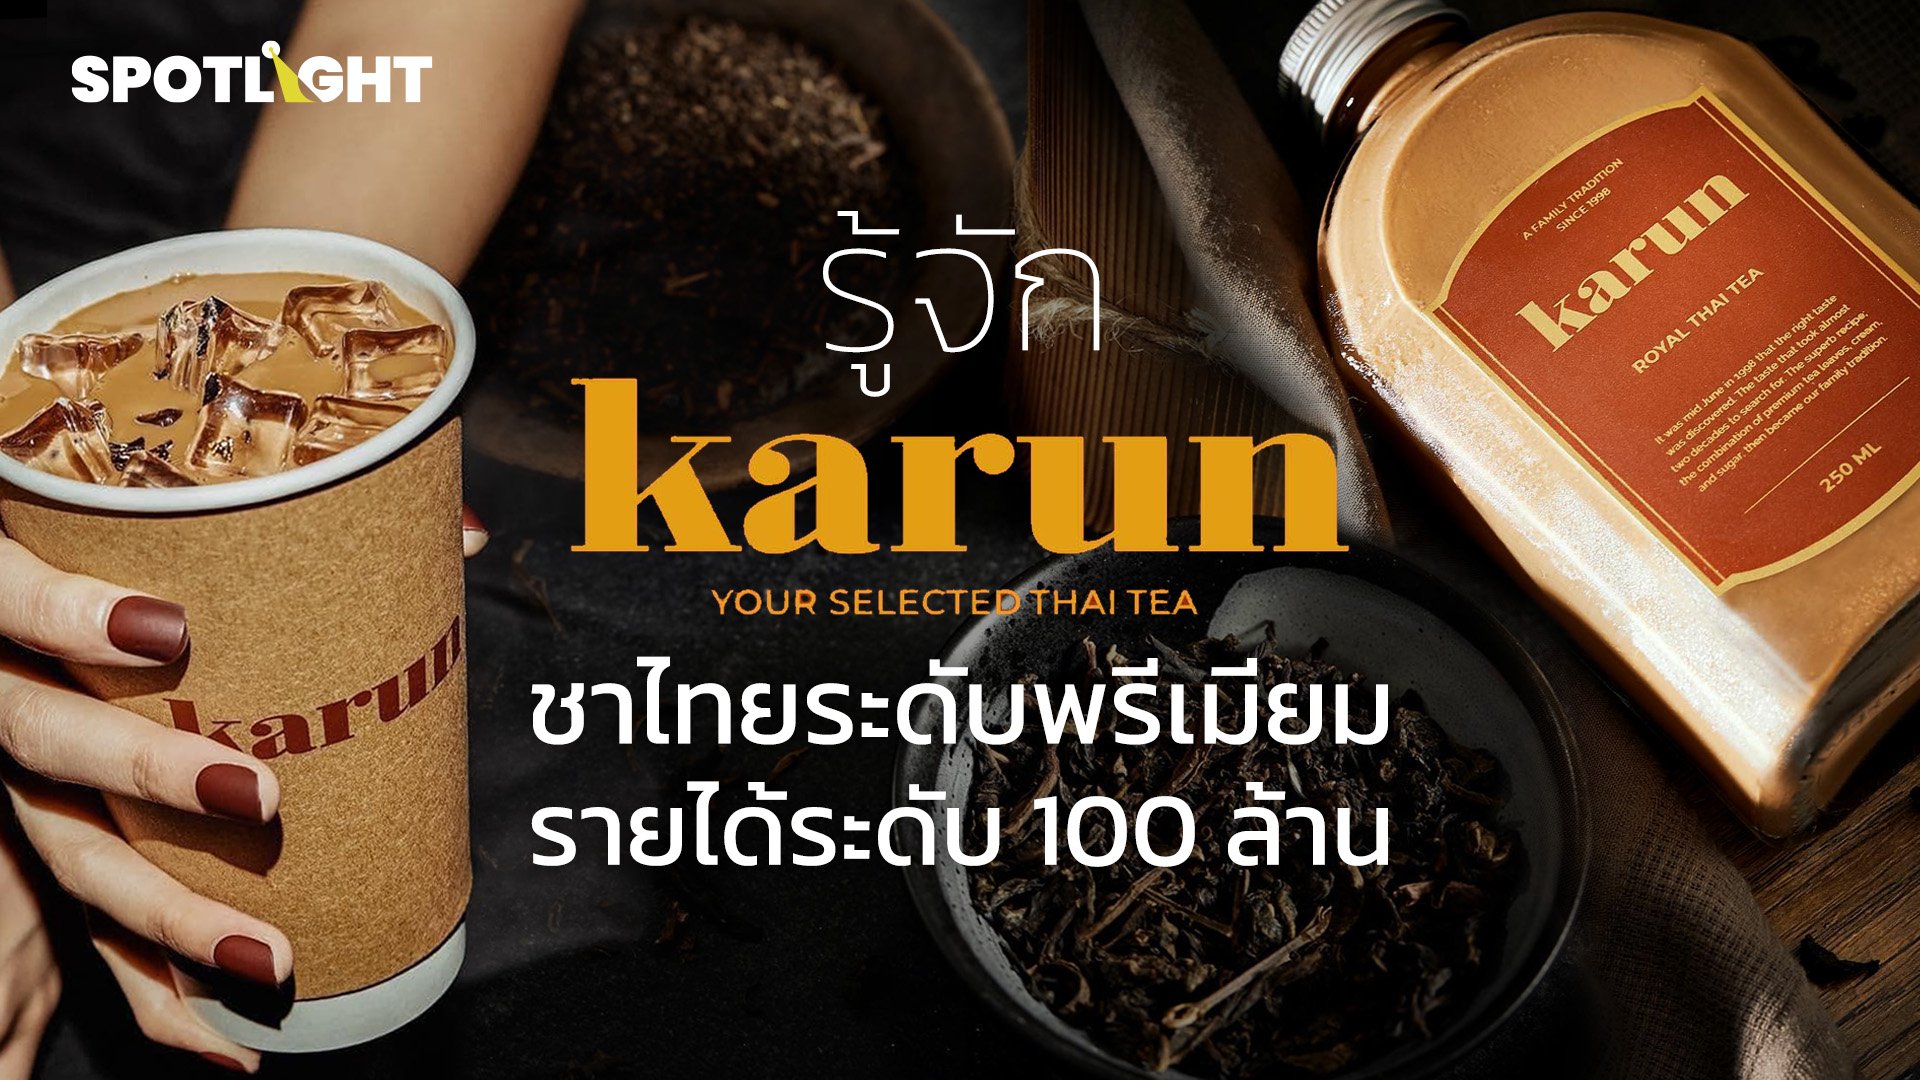 รู้จัก "การัน" ชาไทยระดับพรีเมียม ที่ทำรายได้ระดับ 100 ล้าน | Spotlight | 2 ก.ค. 67 | AMARIN TVHD34